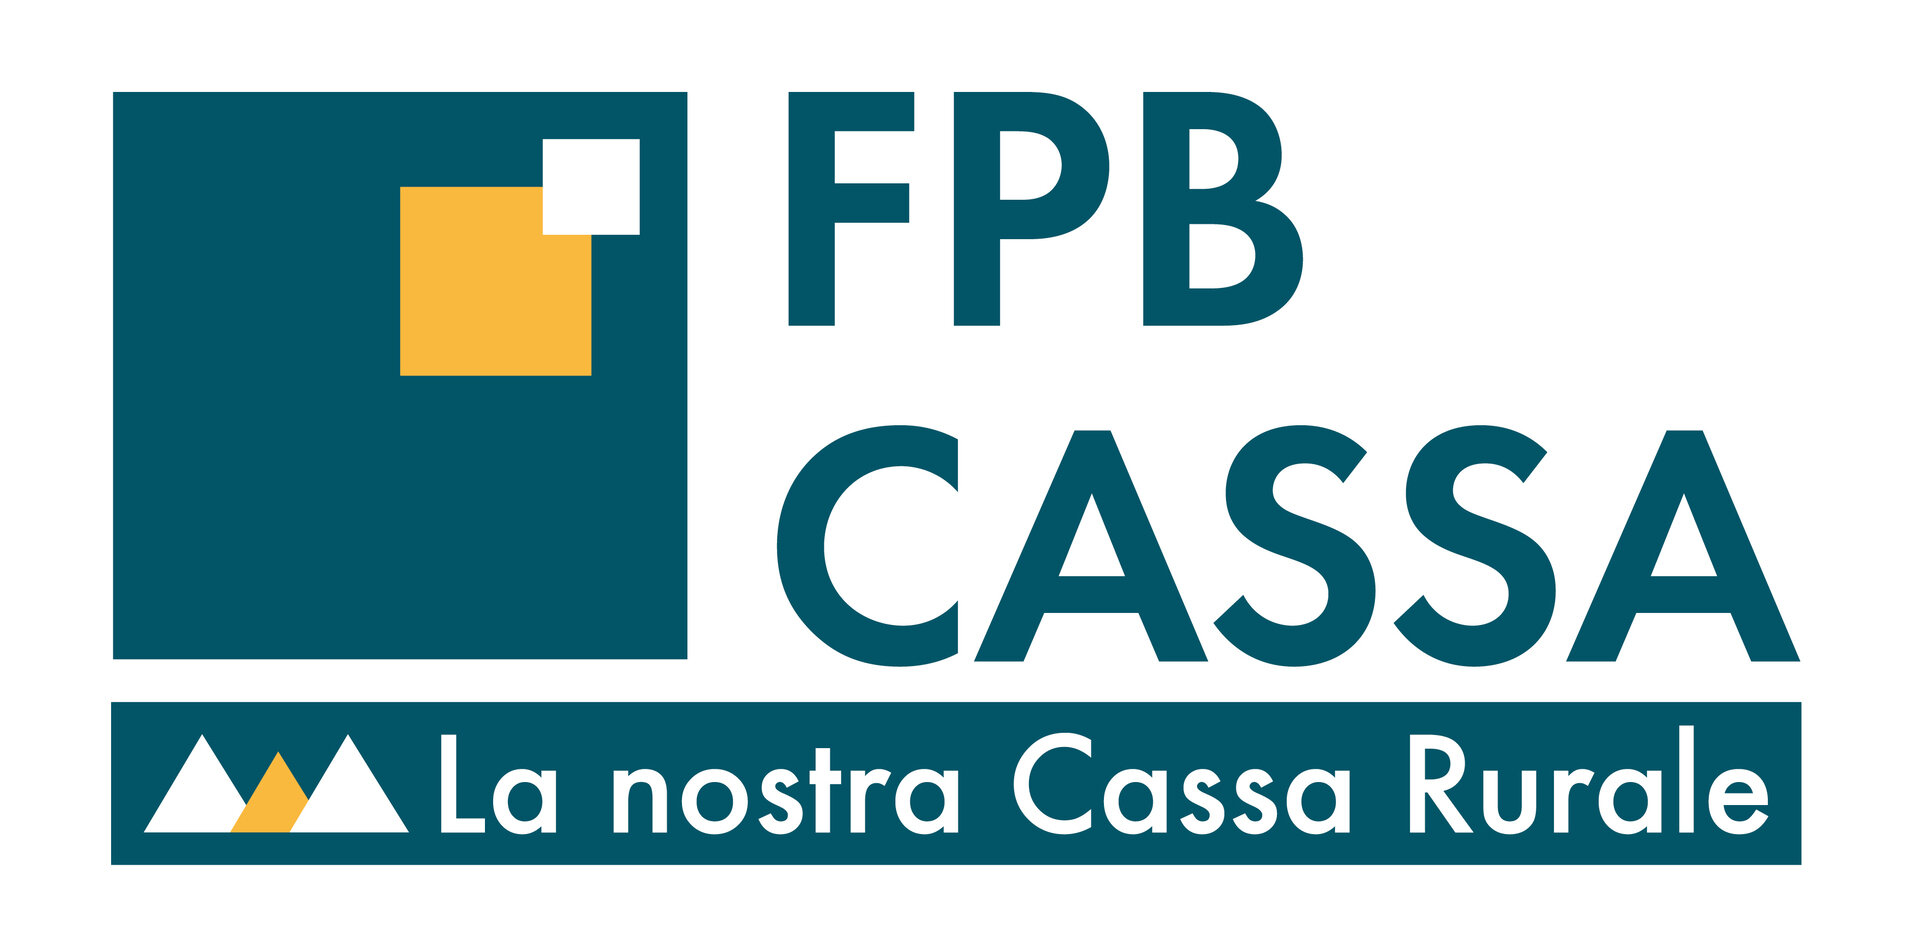 FPB Cassa Di Fassa Primiero Belluno   Zweigstelle Von Canazei